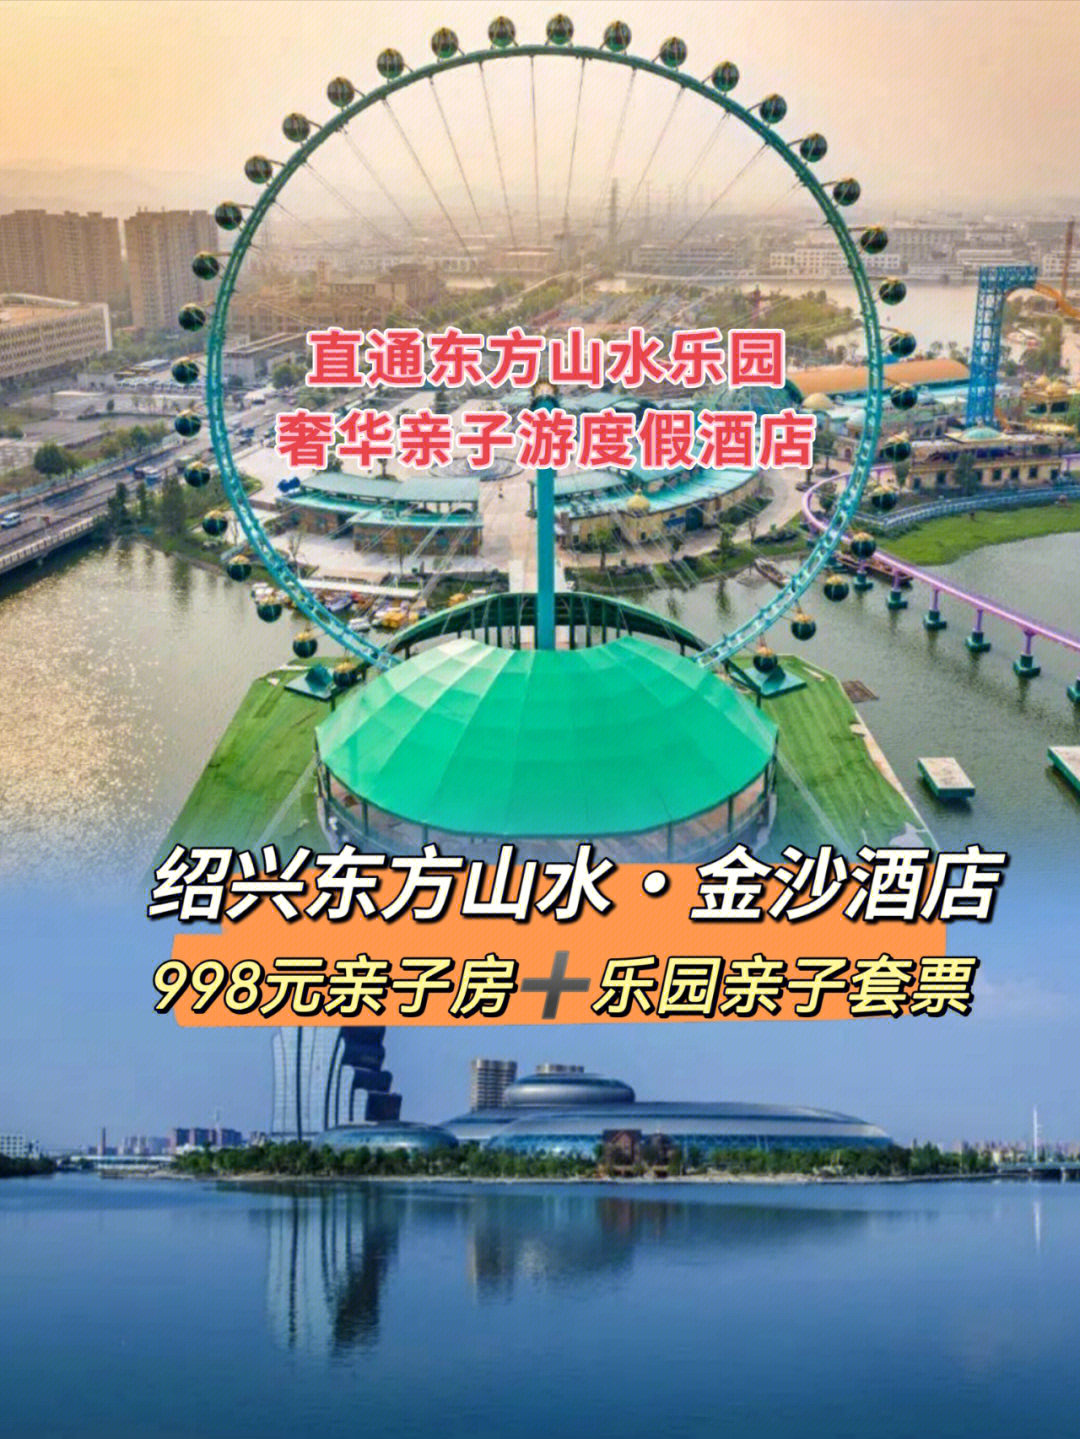 今日酒店推荐99绍兴东方山水·金沙酒店建筑大师设计历时4年精心